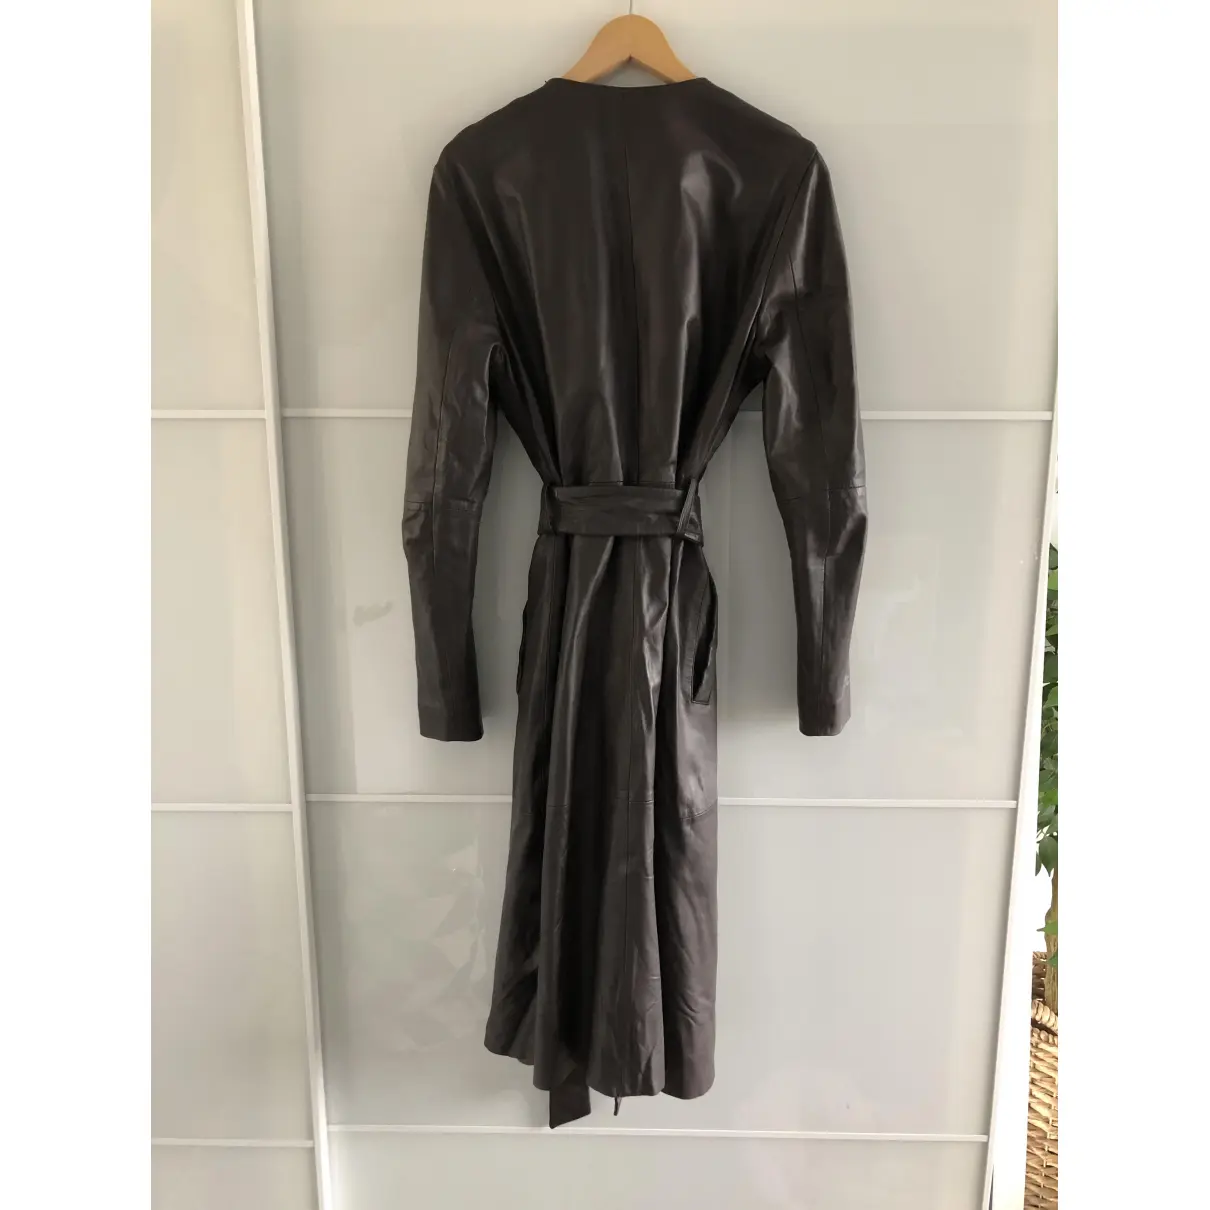 Buy Gestuz Leather coat online